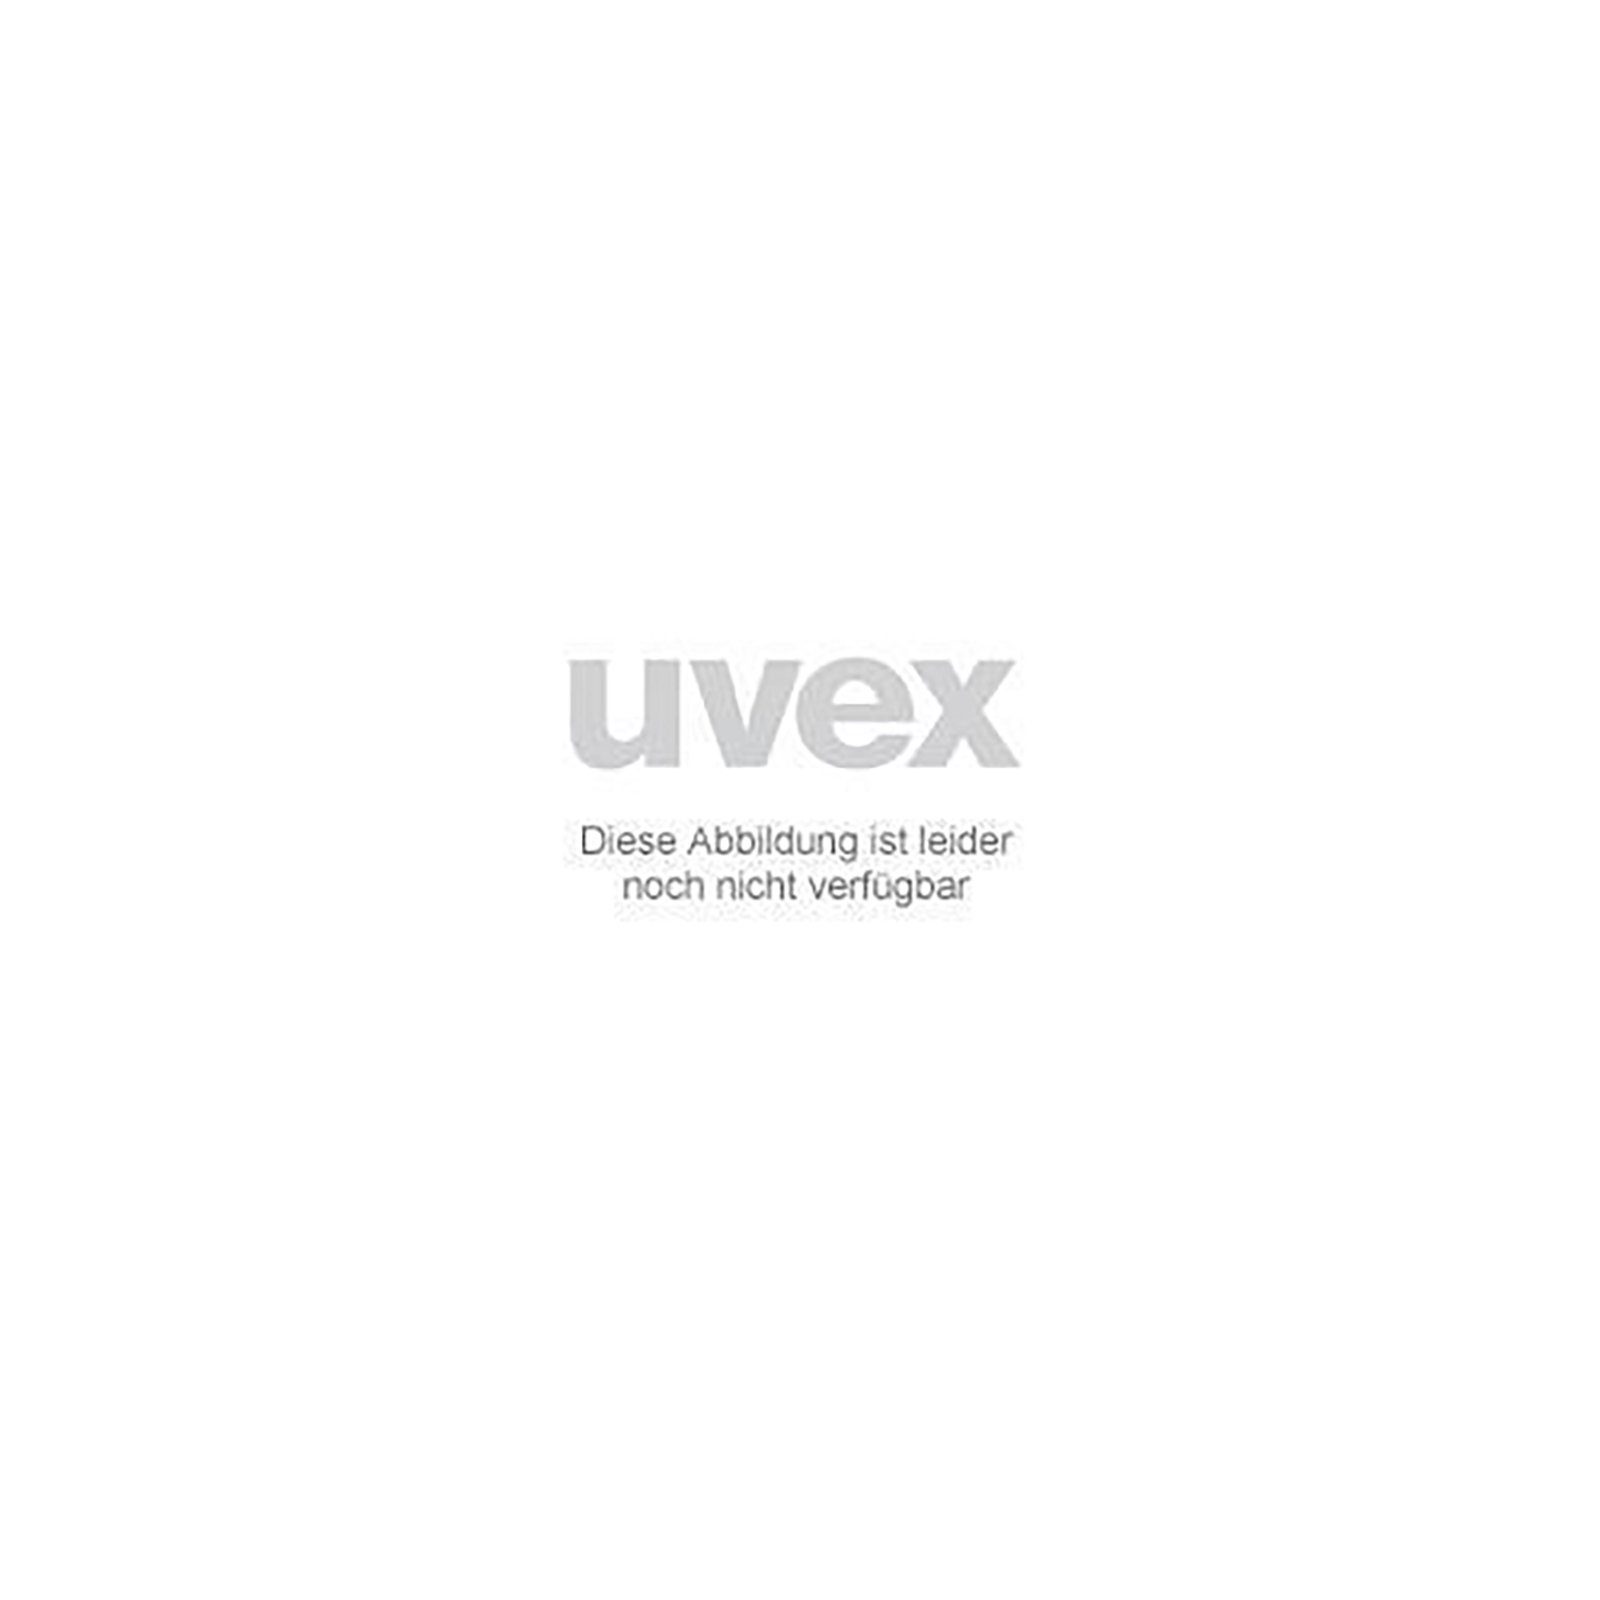 Uvex Arbeitsschutzbrille Ersatzscheibe 9104084 grau Schweißerschutz 4